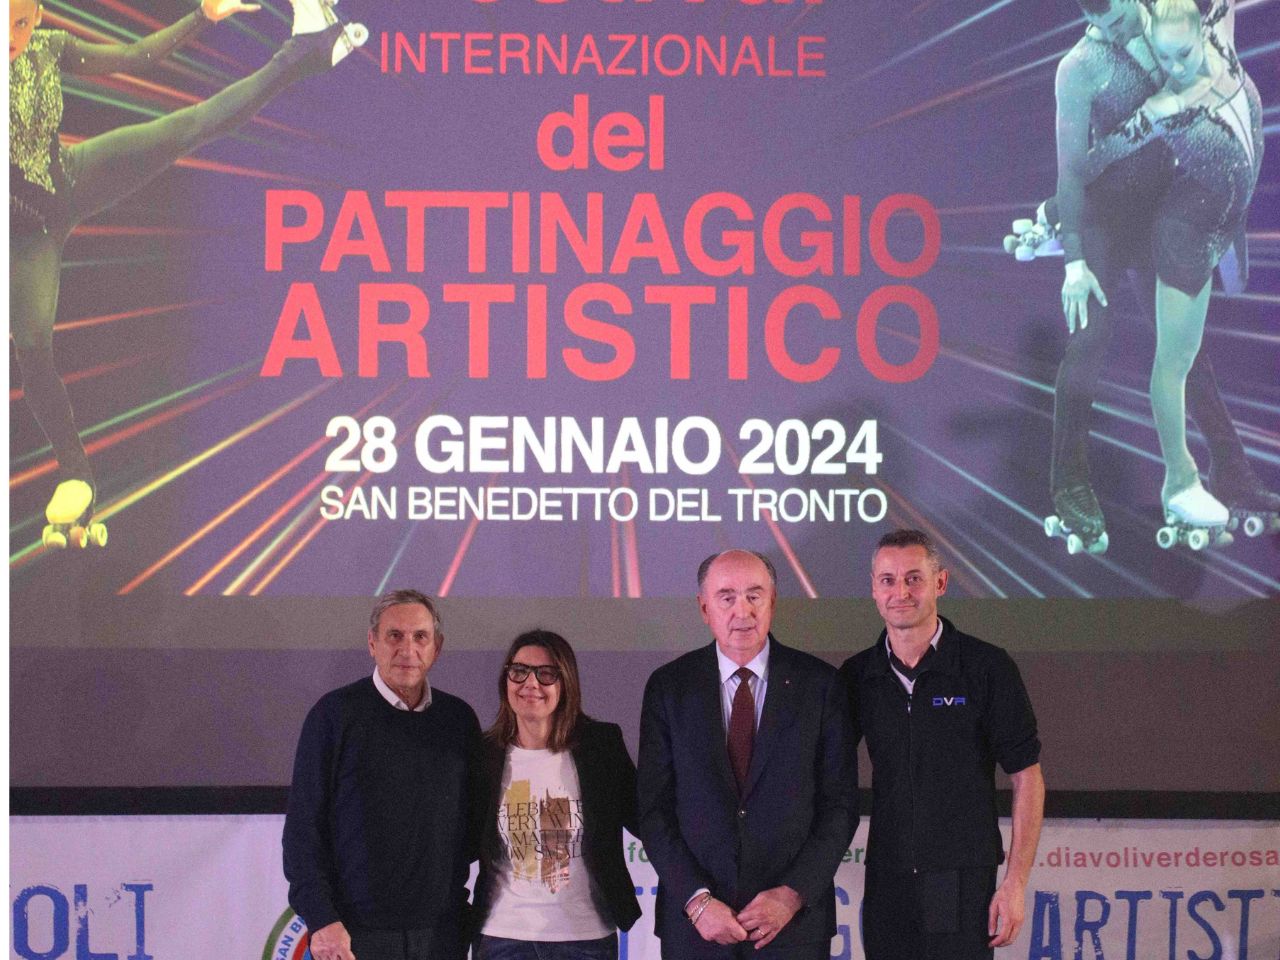 Festival Internazionale del Pattinaggio Artistico, spettacolo a San Benedetto del Tronto